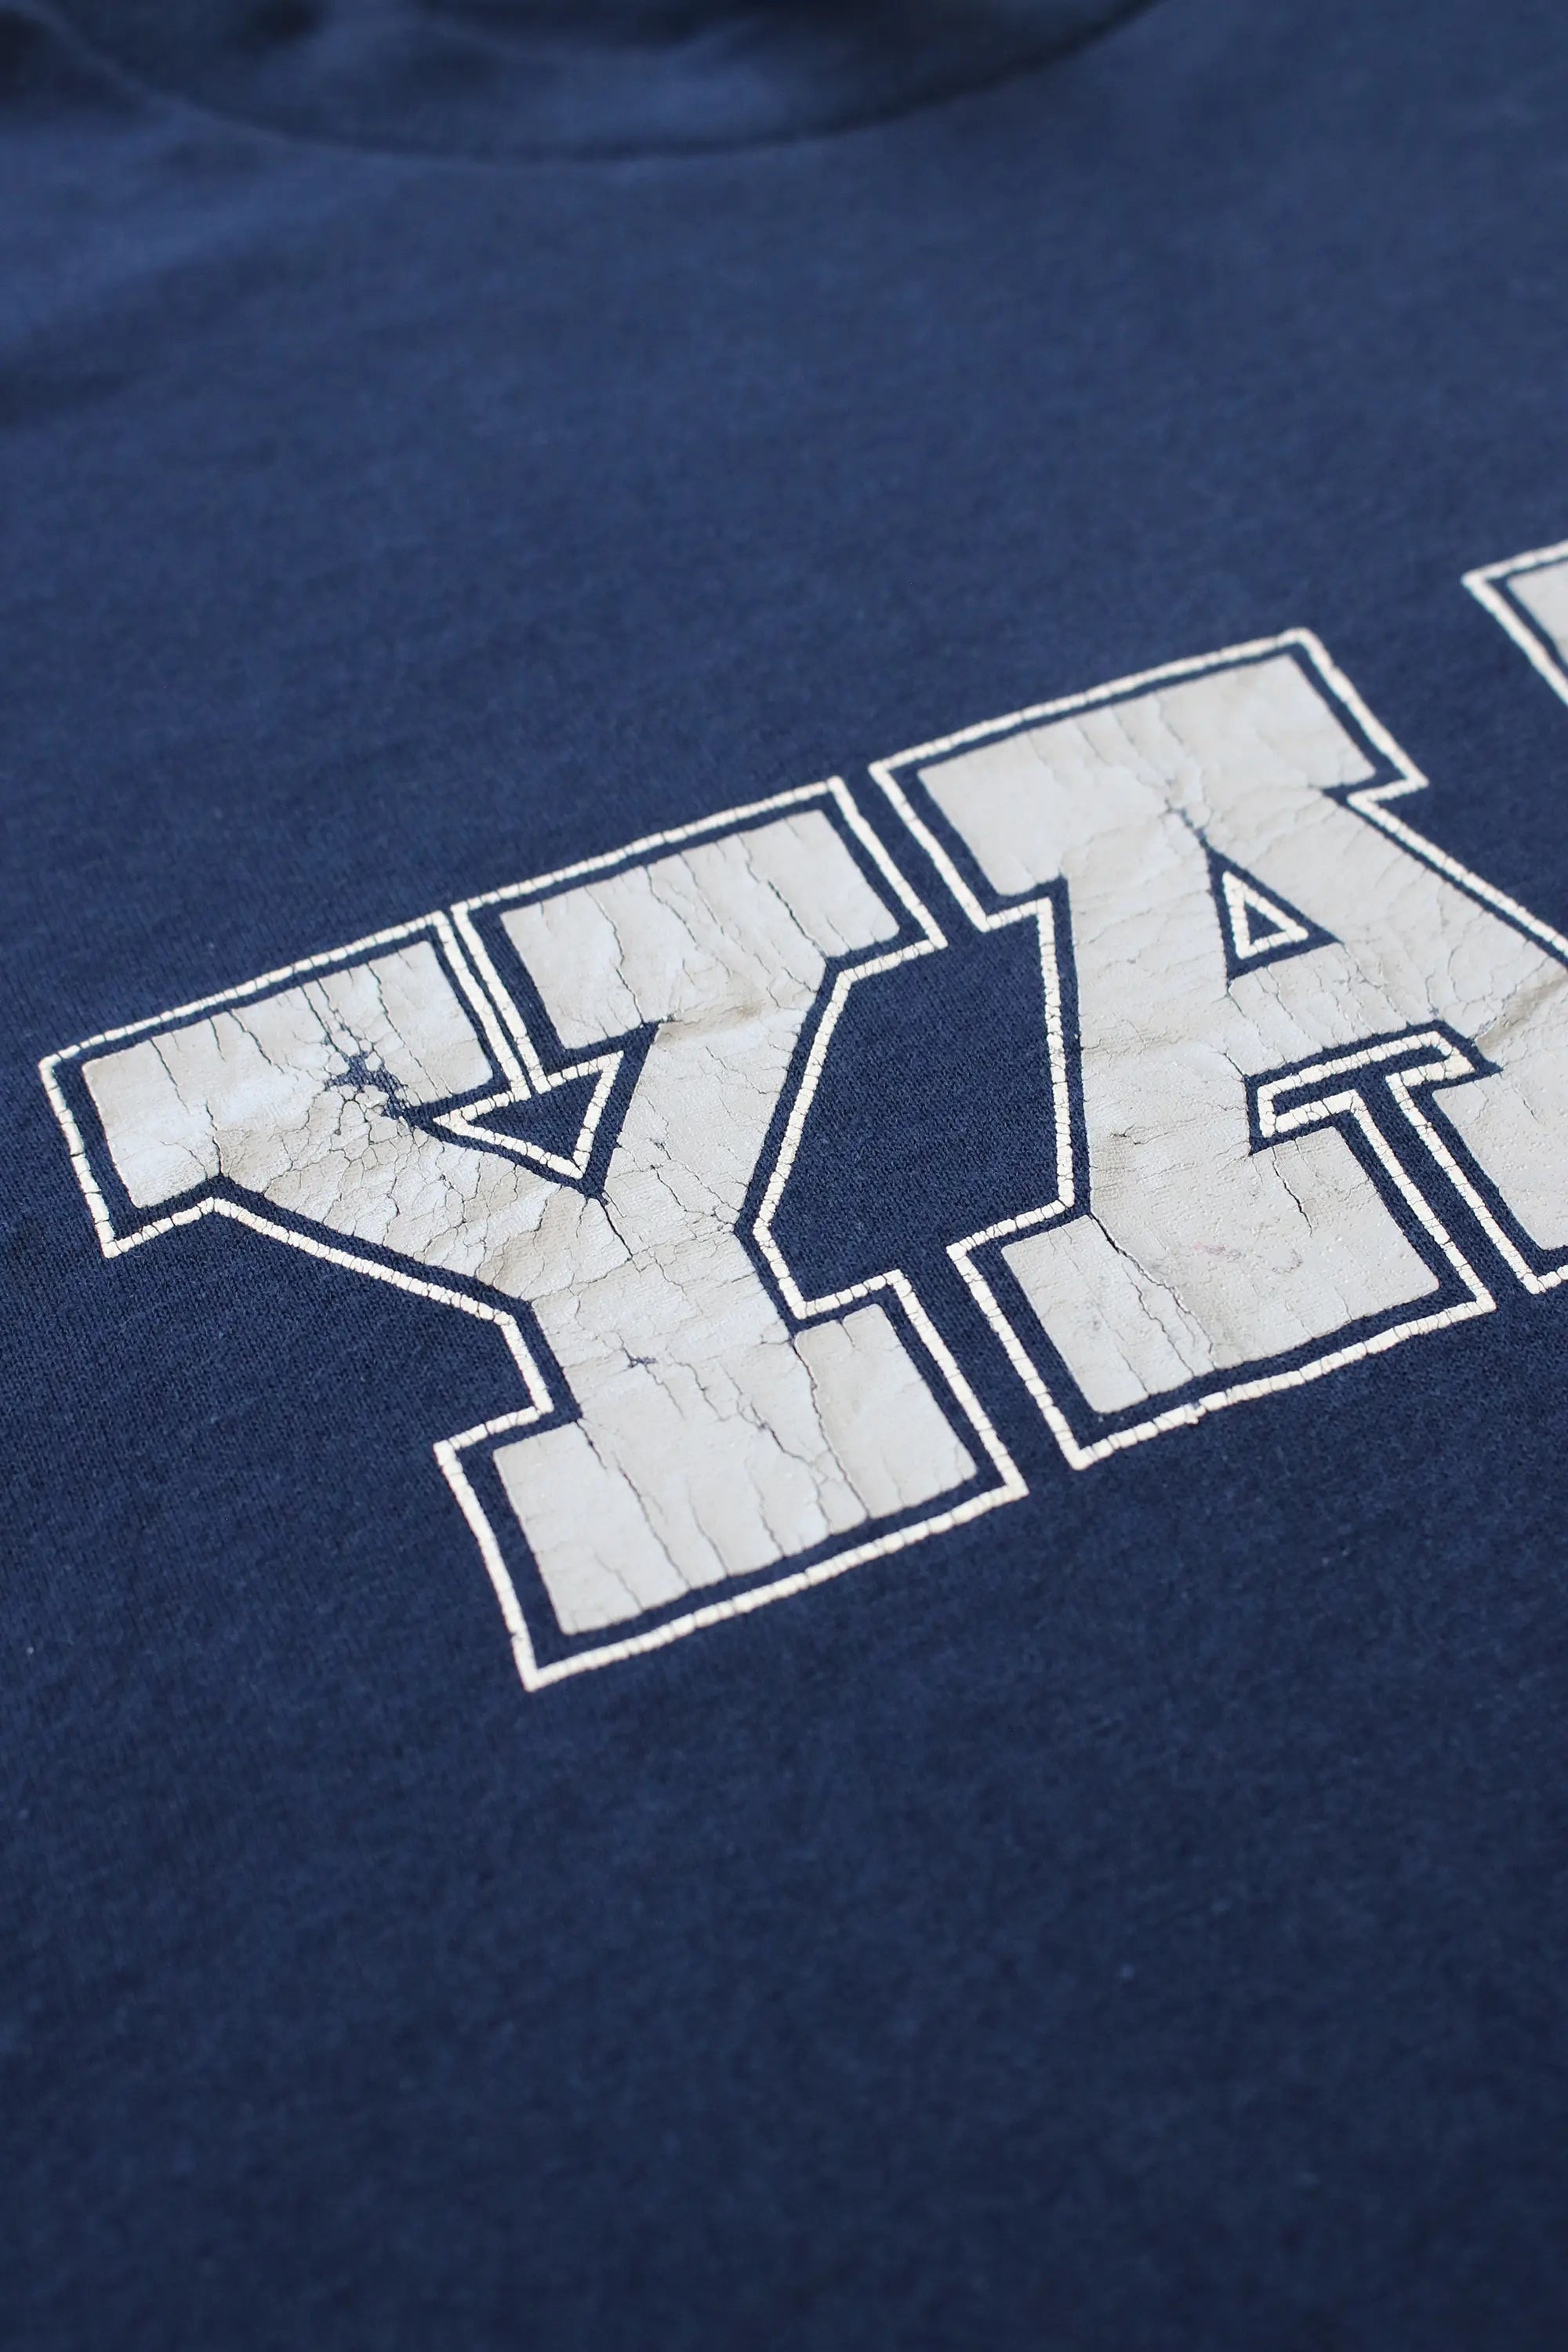 Vintage Yale University T-Shirt